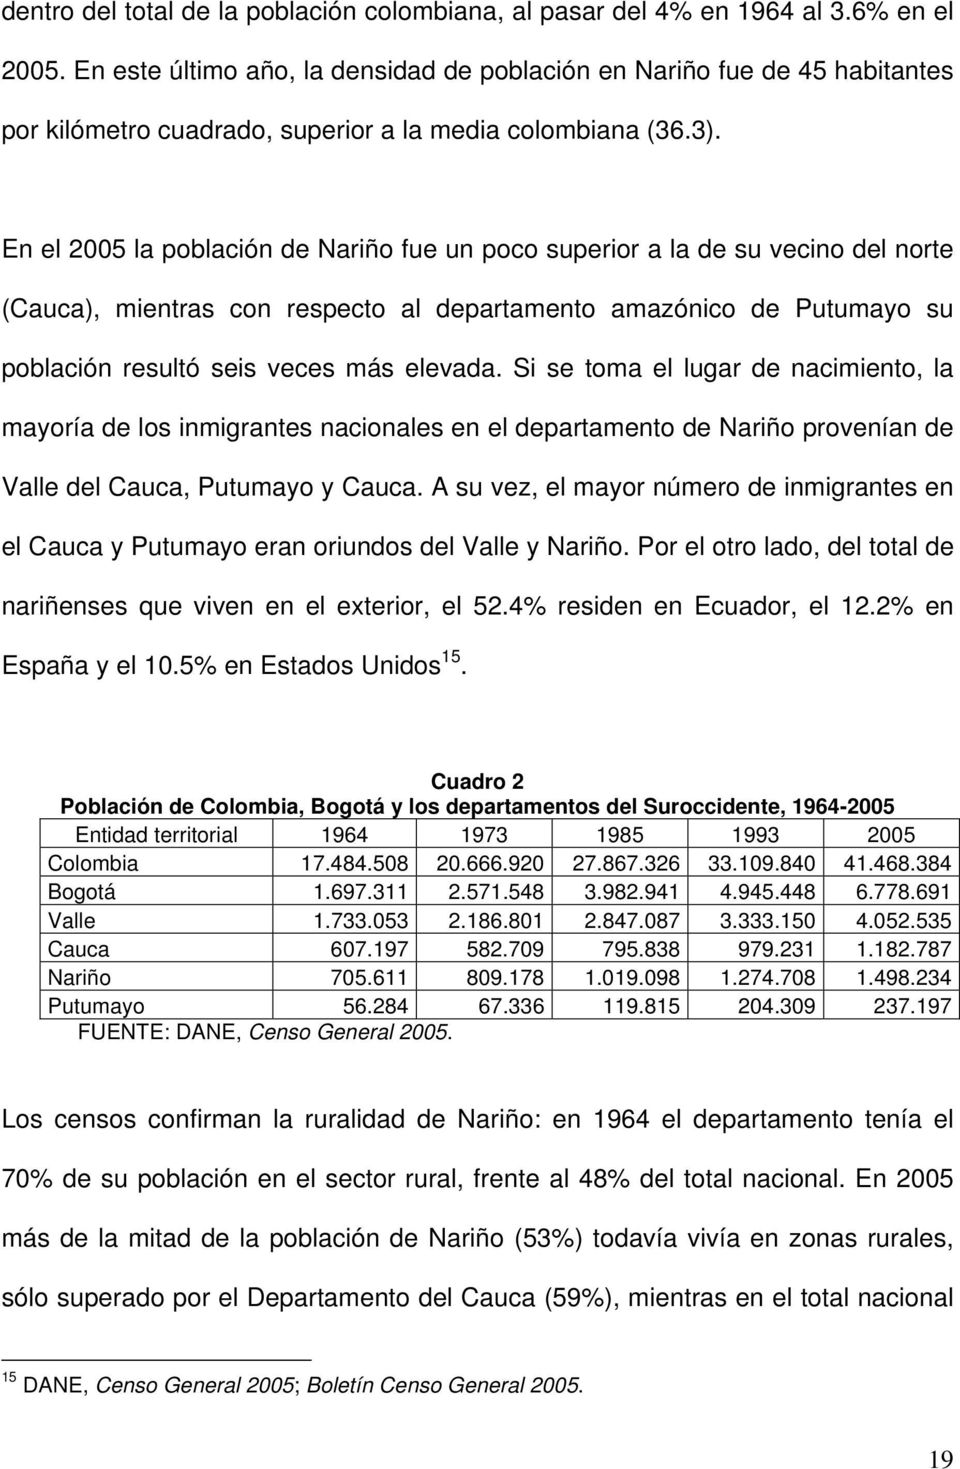 En el 2005 la población de Nariño fue un poco superior a la de su vecino del norte (Cauca), mientras con respecto al departamento amazónico de Putumayo su población resultó seis veces más elevada.